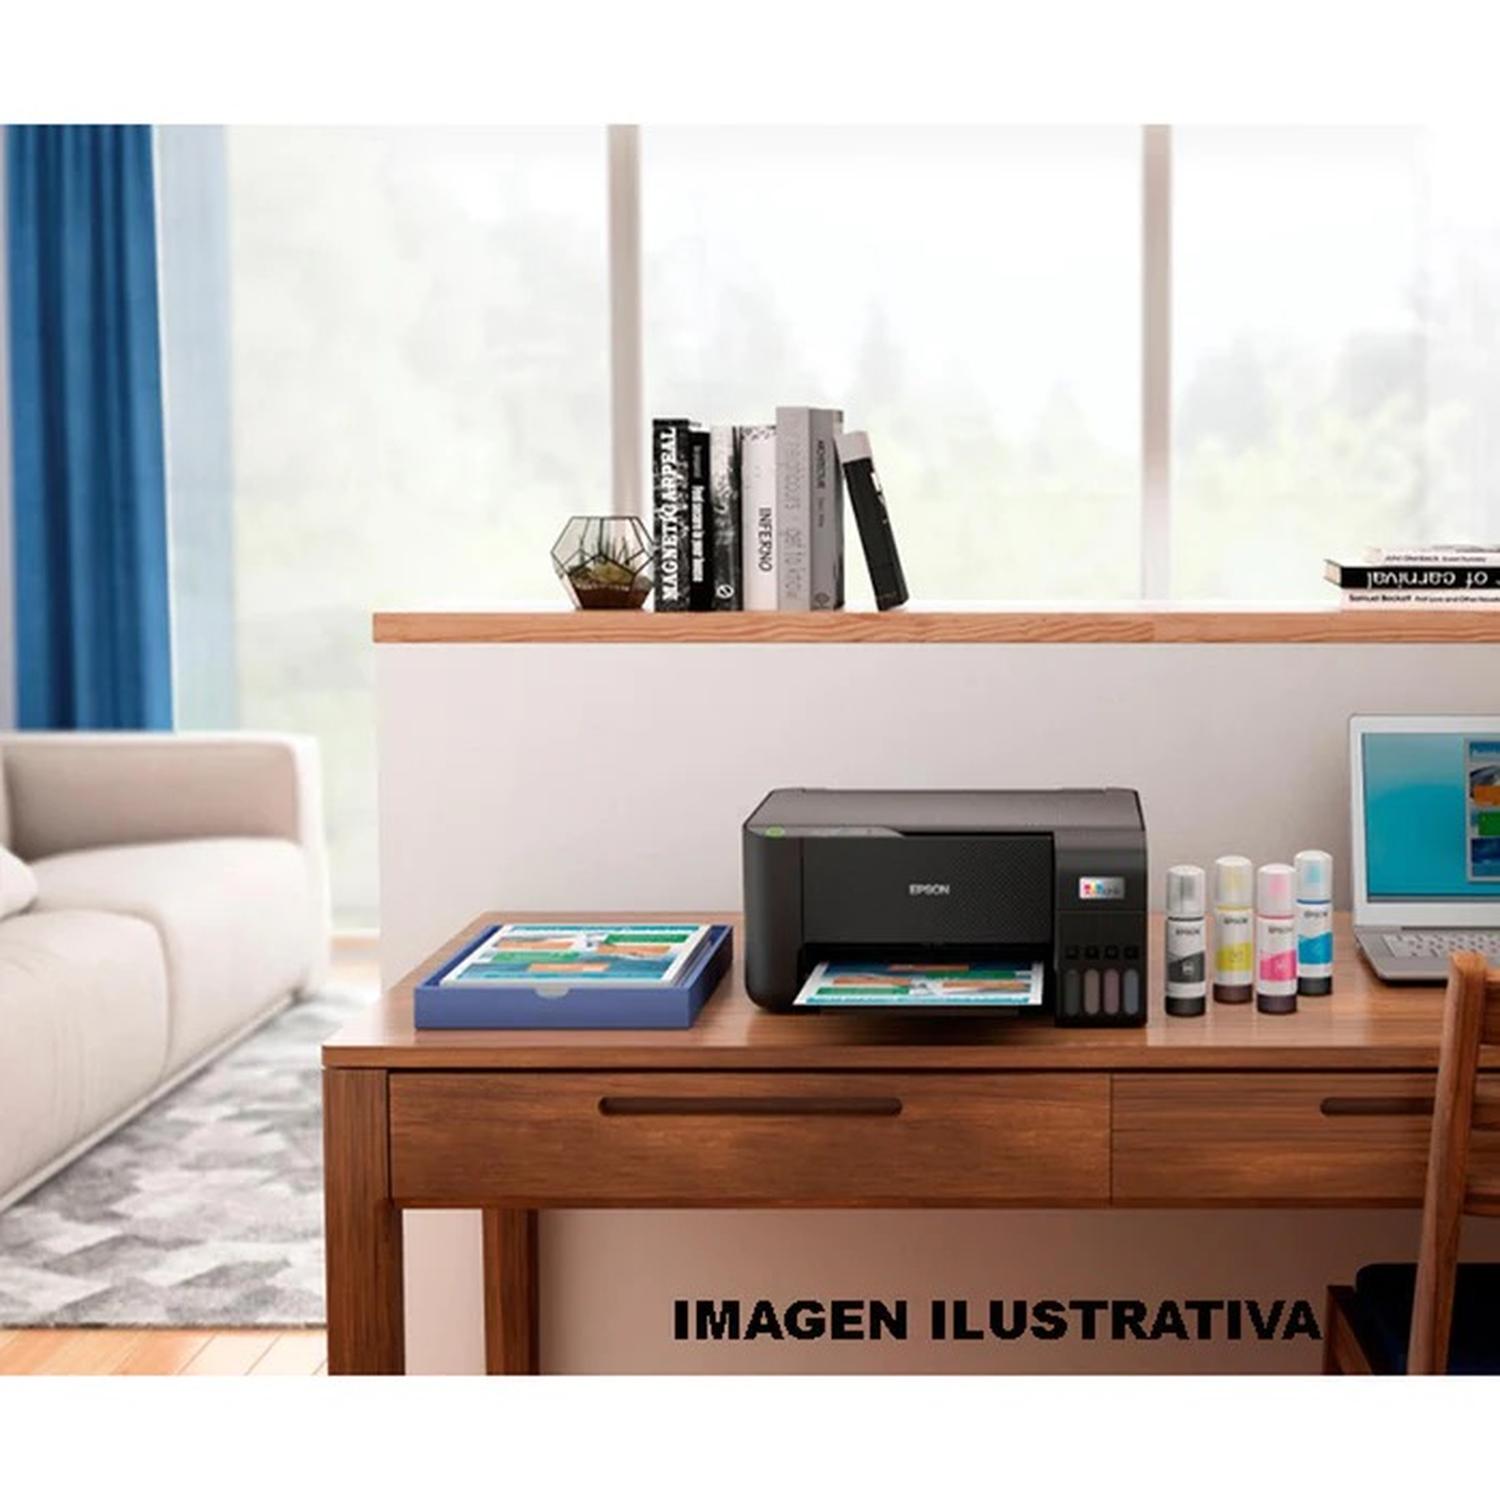 Impresora Epson L1250 Imprime A Color Con Wifi Color Negro